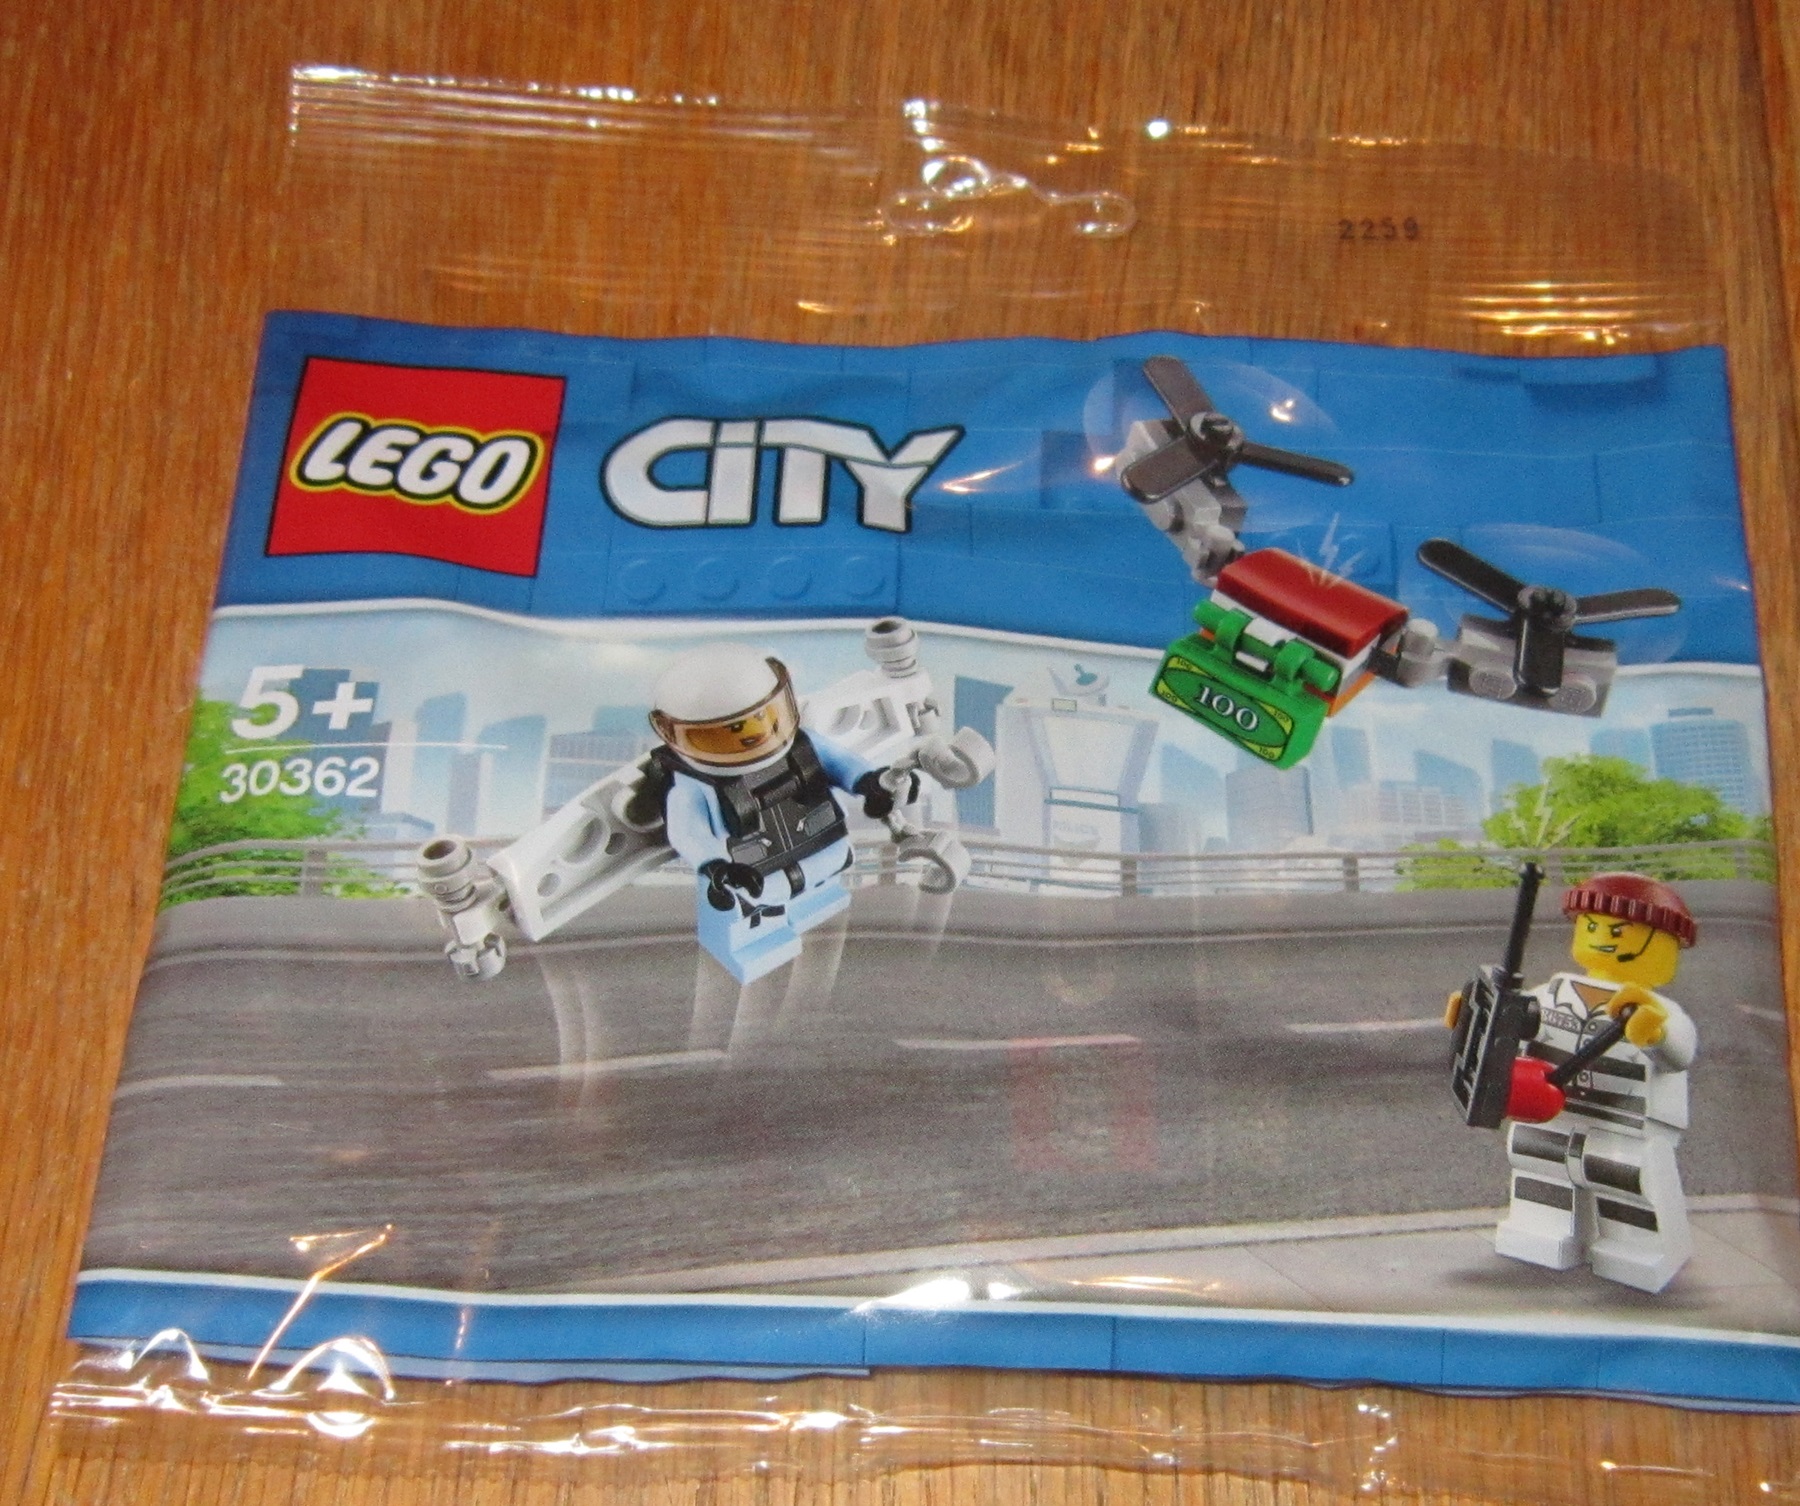 0100 Lego City 30362